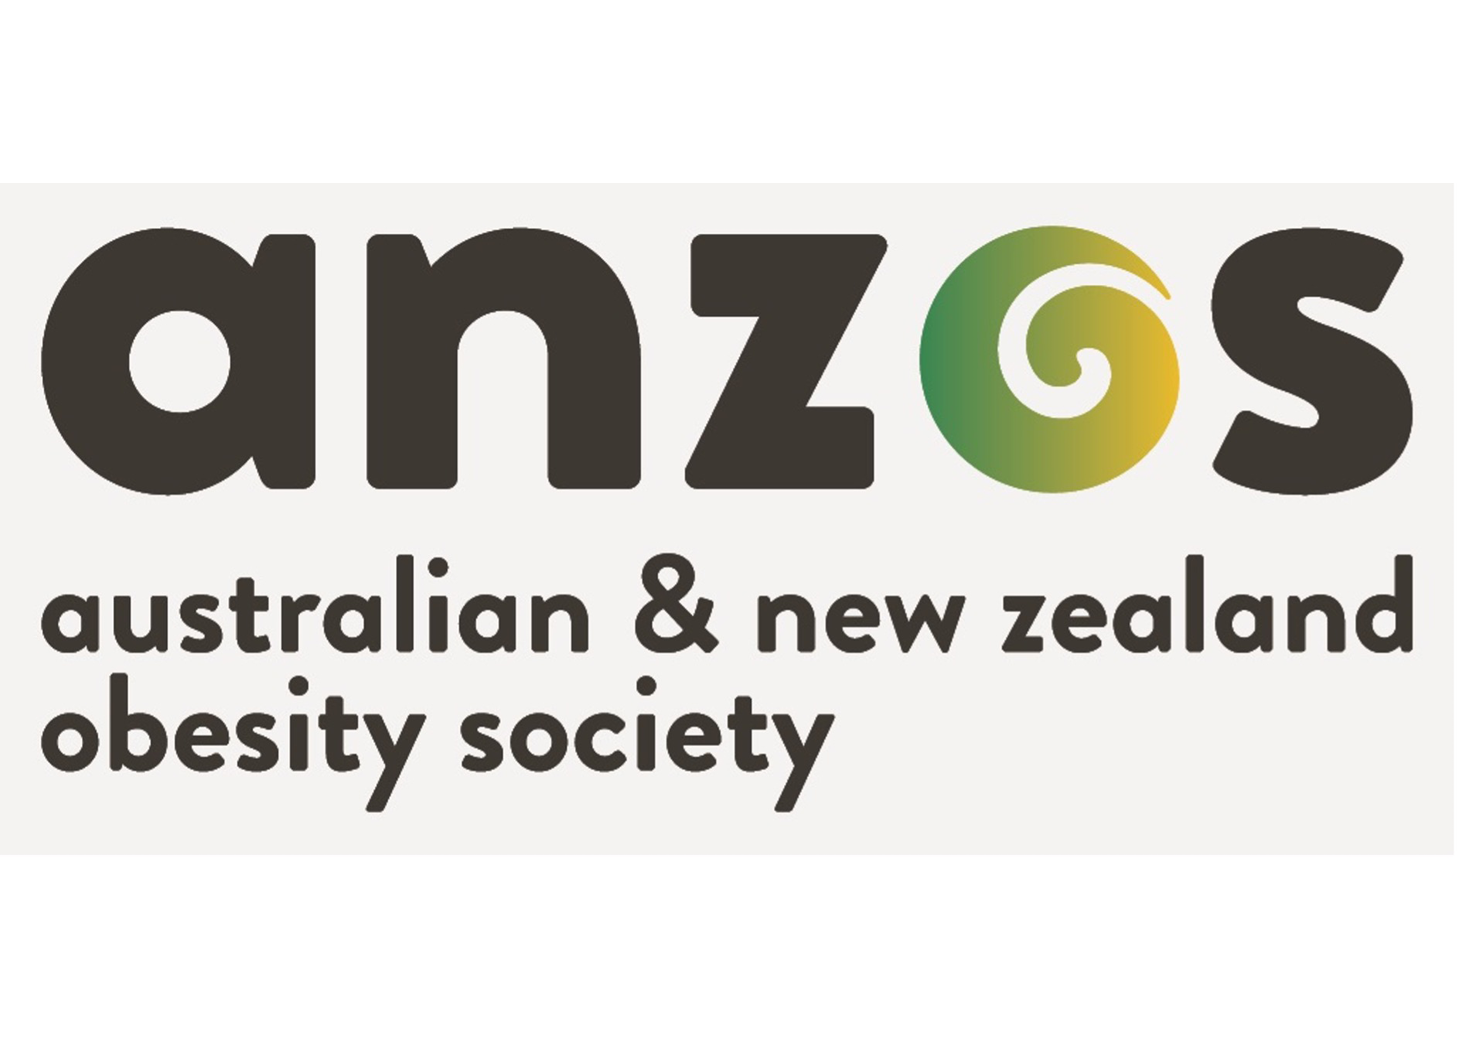 The Australian and New Zealand Obesity Society